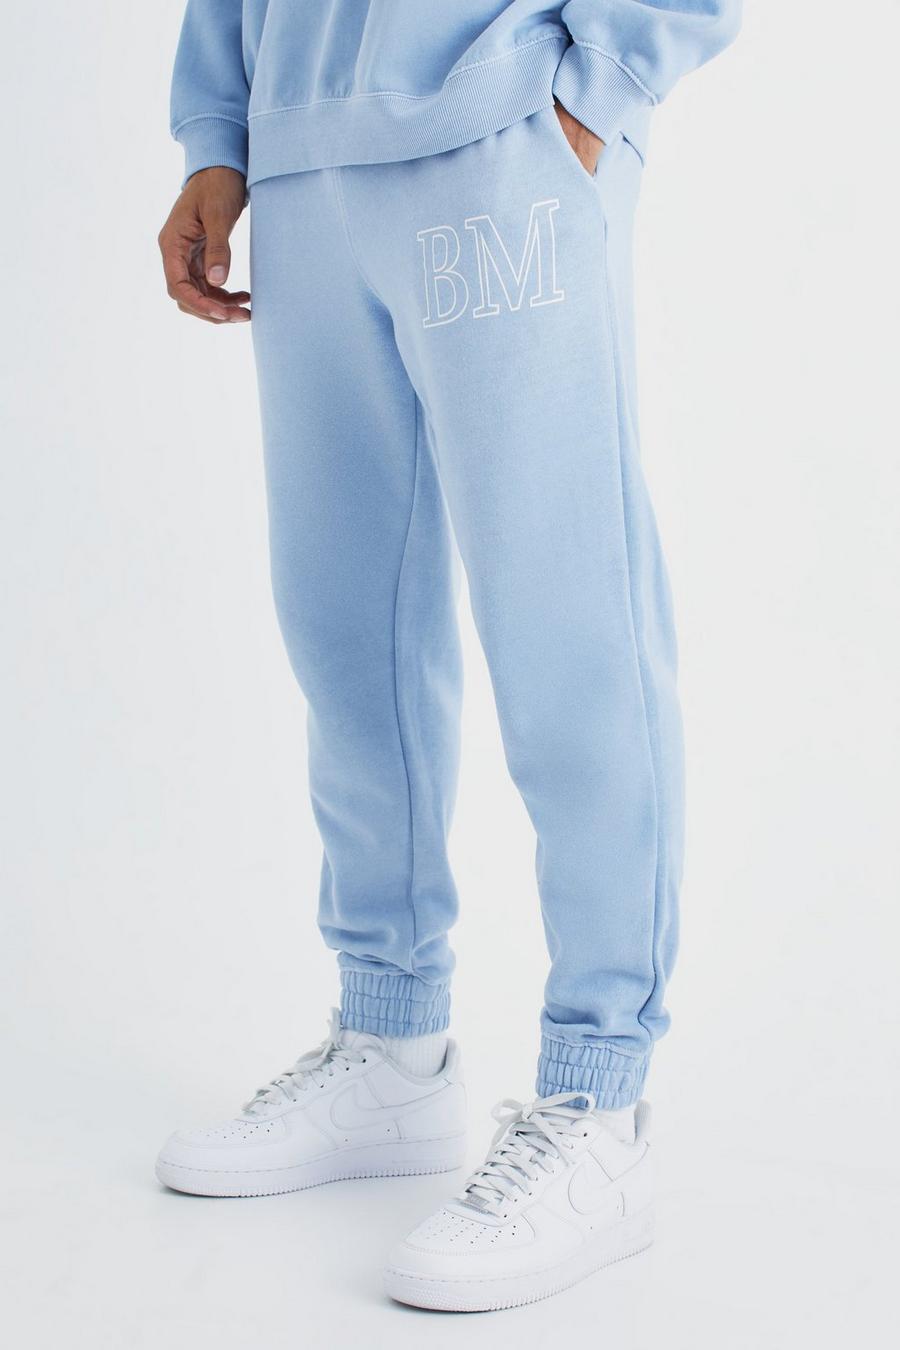 Pantalón deportivo sobreteñido con estampado gráfico BM sobreteñido, Blue